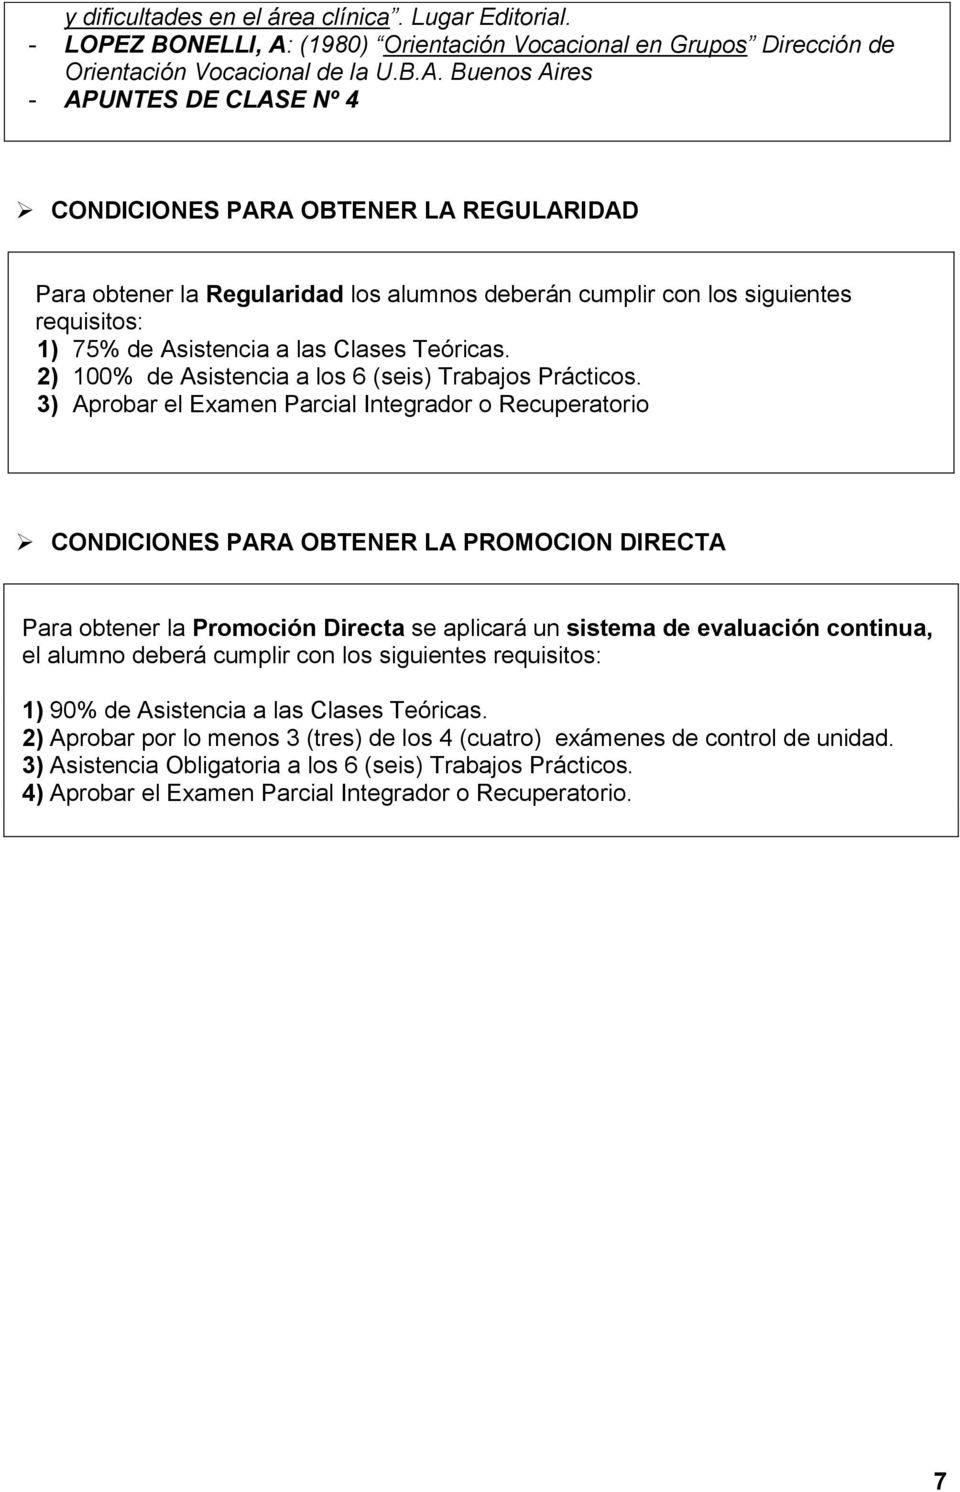 Buenos Aires - APUNTES DE CLASE Nº 4 CONDICIONES PARA OBTENER LA REGULARIDAD Para obtener la Regularidad los alumnos deberán cumplir con los siguientes requisitos: ) 75% de Asistencia a las Clases